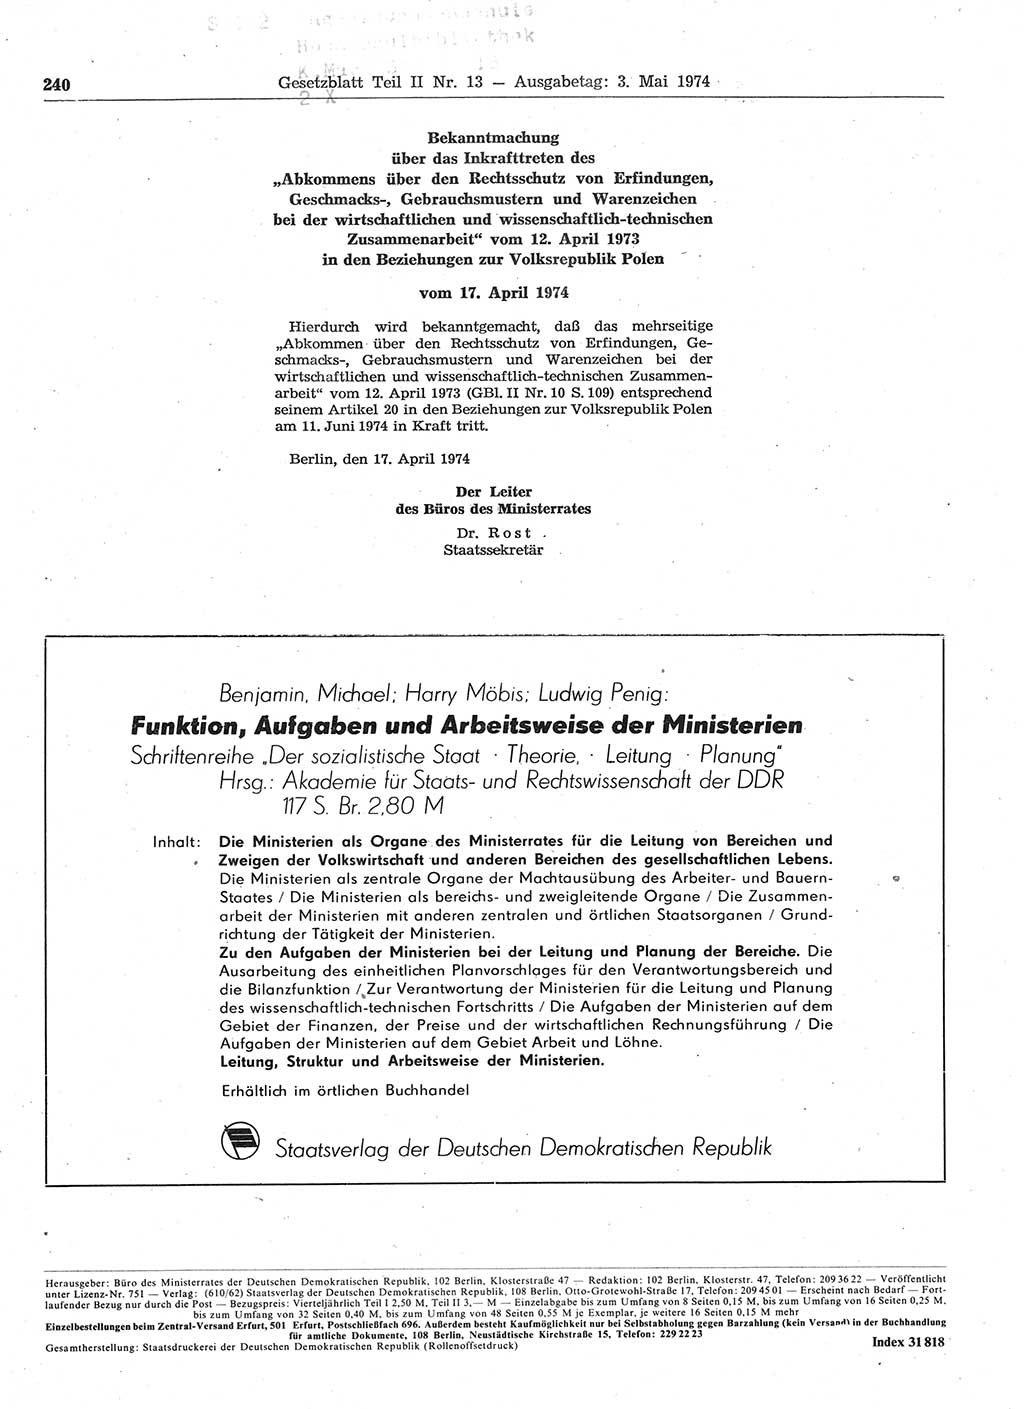 Gesetzblatt (GBl.) der Deutschen Demokratischen Republik (DDR) Teil ⅠⅠ 1974, Seite 240 (GBl. DDR ⅠⅠ 1974, S. 240)